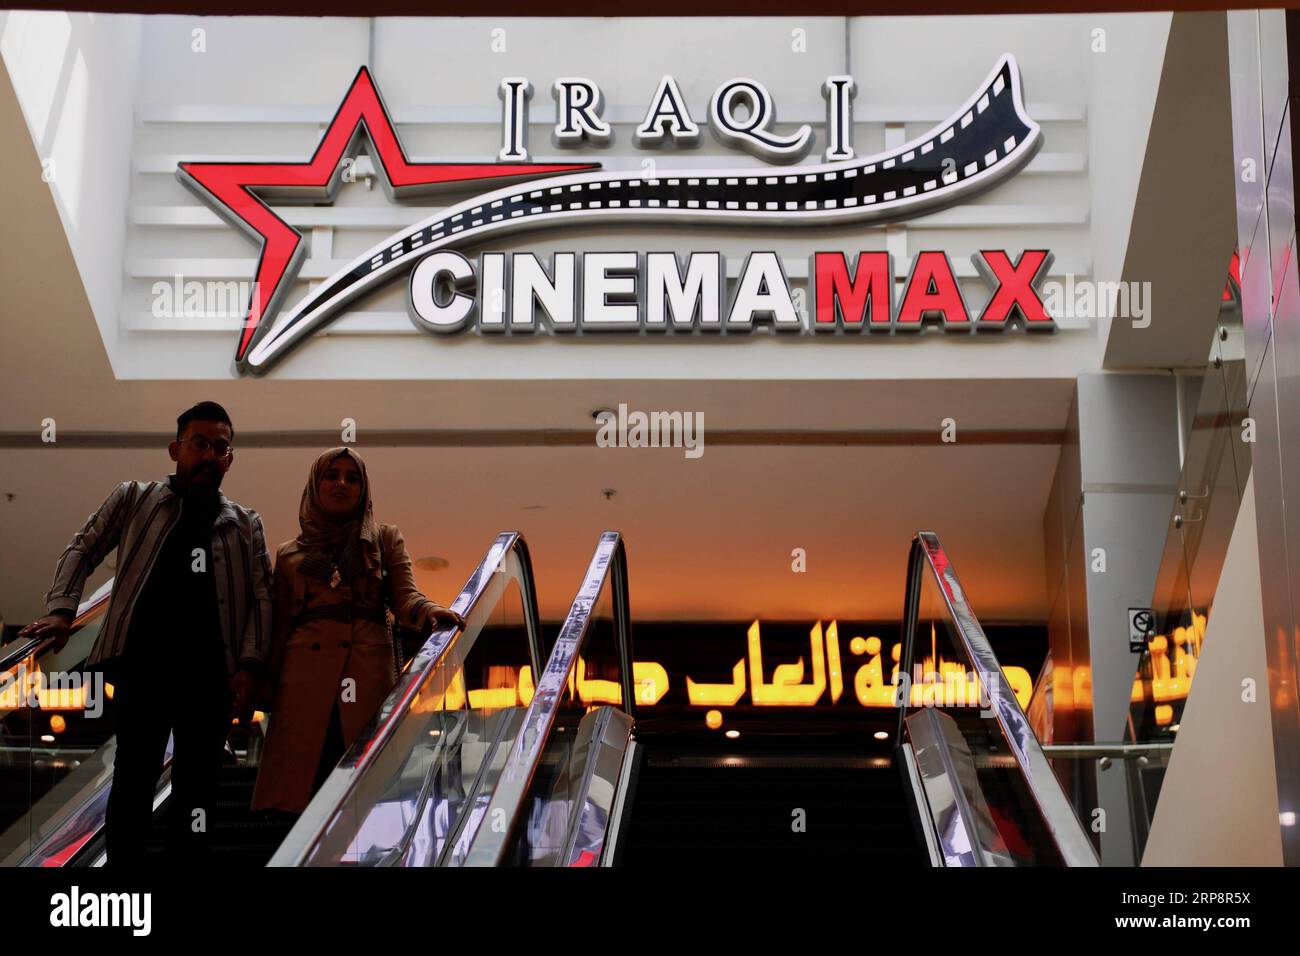 (190313) -- BAGDAD, 13. März 2019 (Xinhua) -- Foto aufgenommen am 21. Februar 2019 zeigt ein Kino in Bagdad, Irak. ZU DEN Features: Moderne Kinos MIT mehreren Bildschirmen ziehen begeisterte irakische Kinobesucher an, während die berühmten Kinos (Xinhua/Khalil Dawood) IRAK-BAGDAD-KINO PUBLICATIONxNOTxINxCHN verschwinden Stockfoto